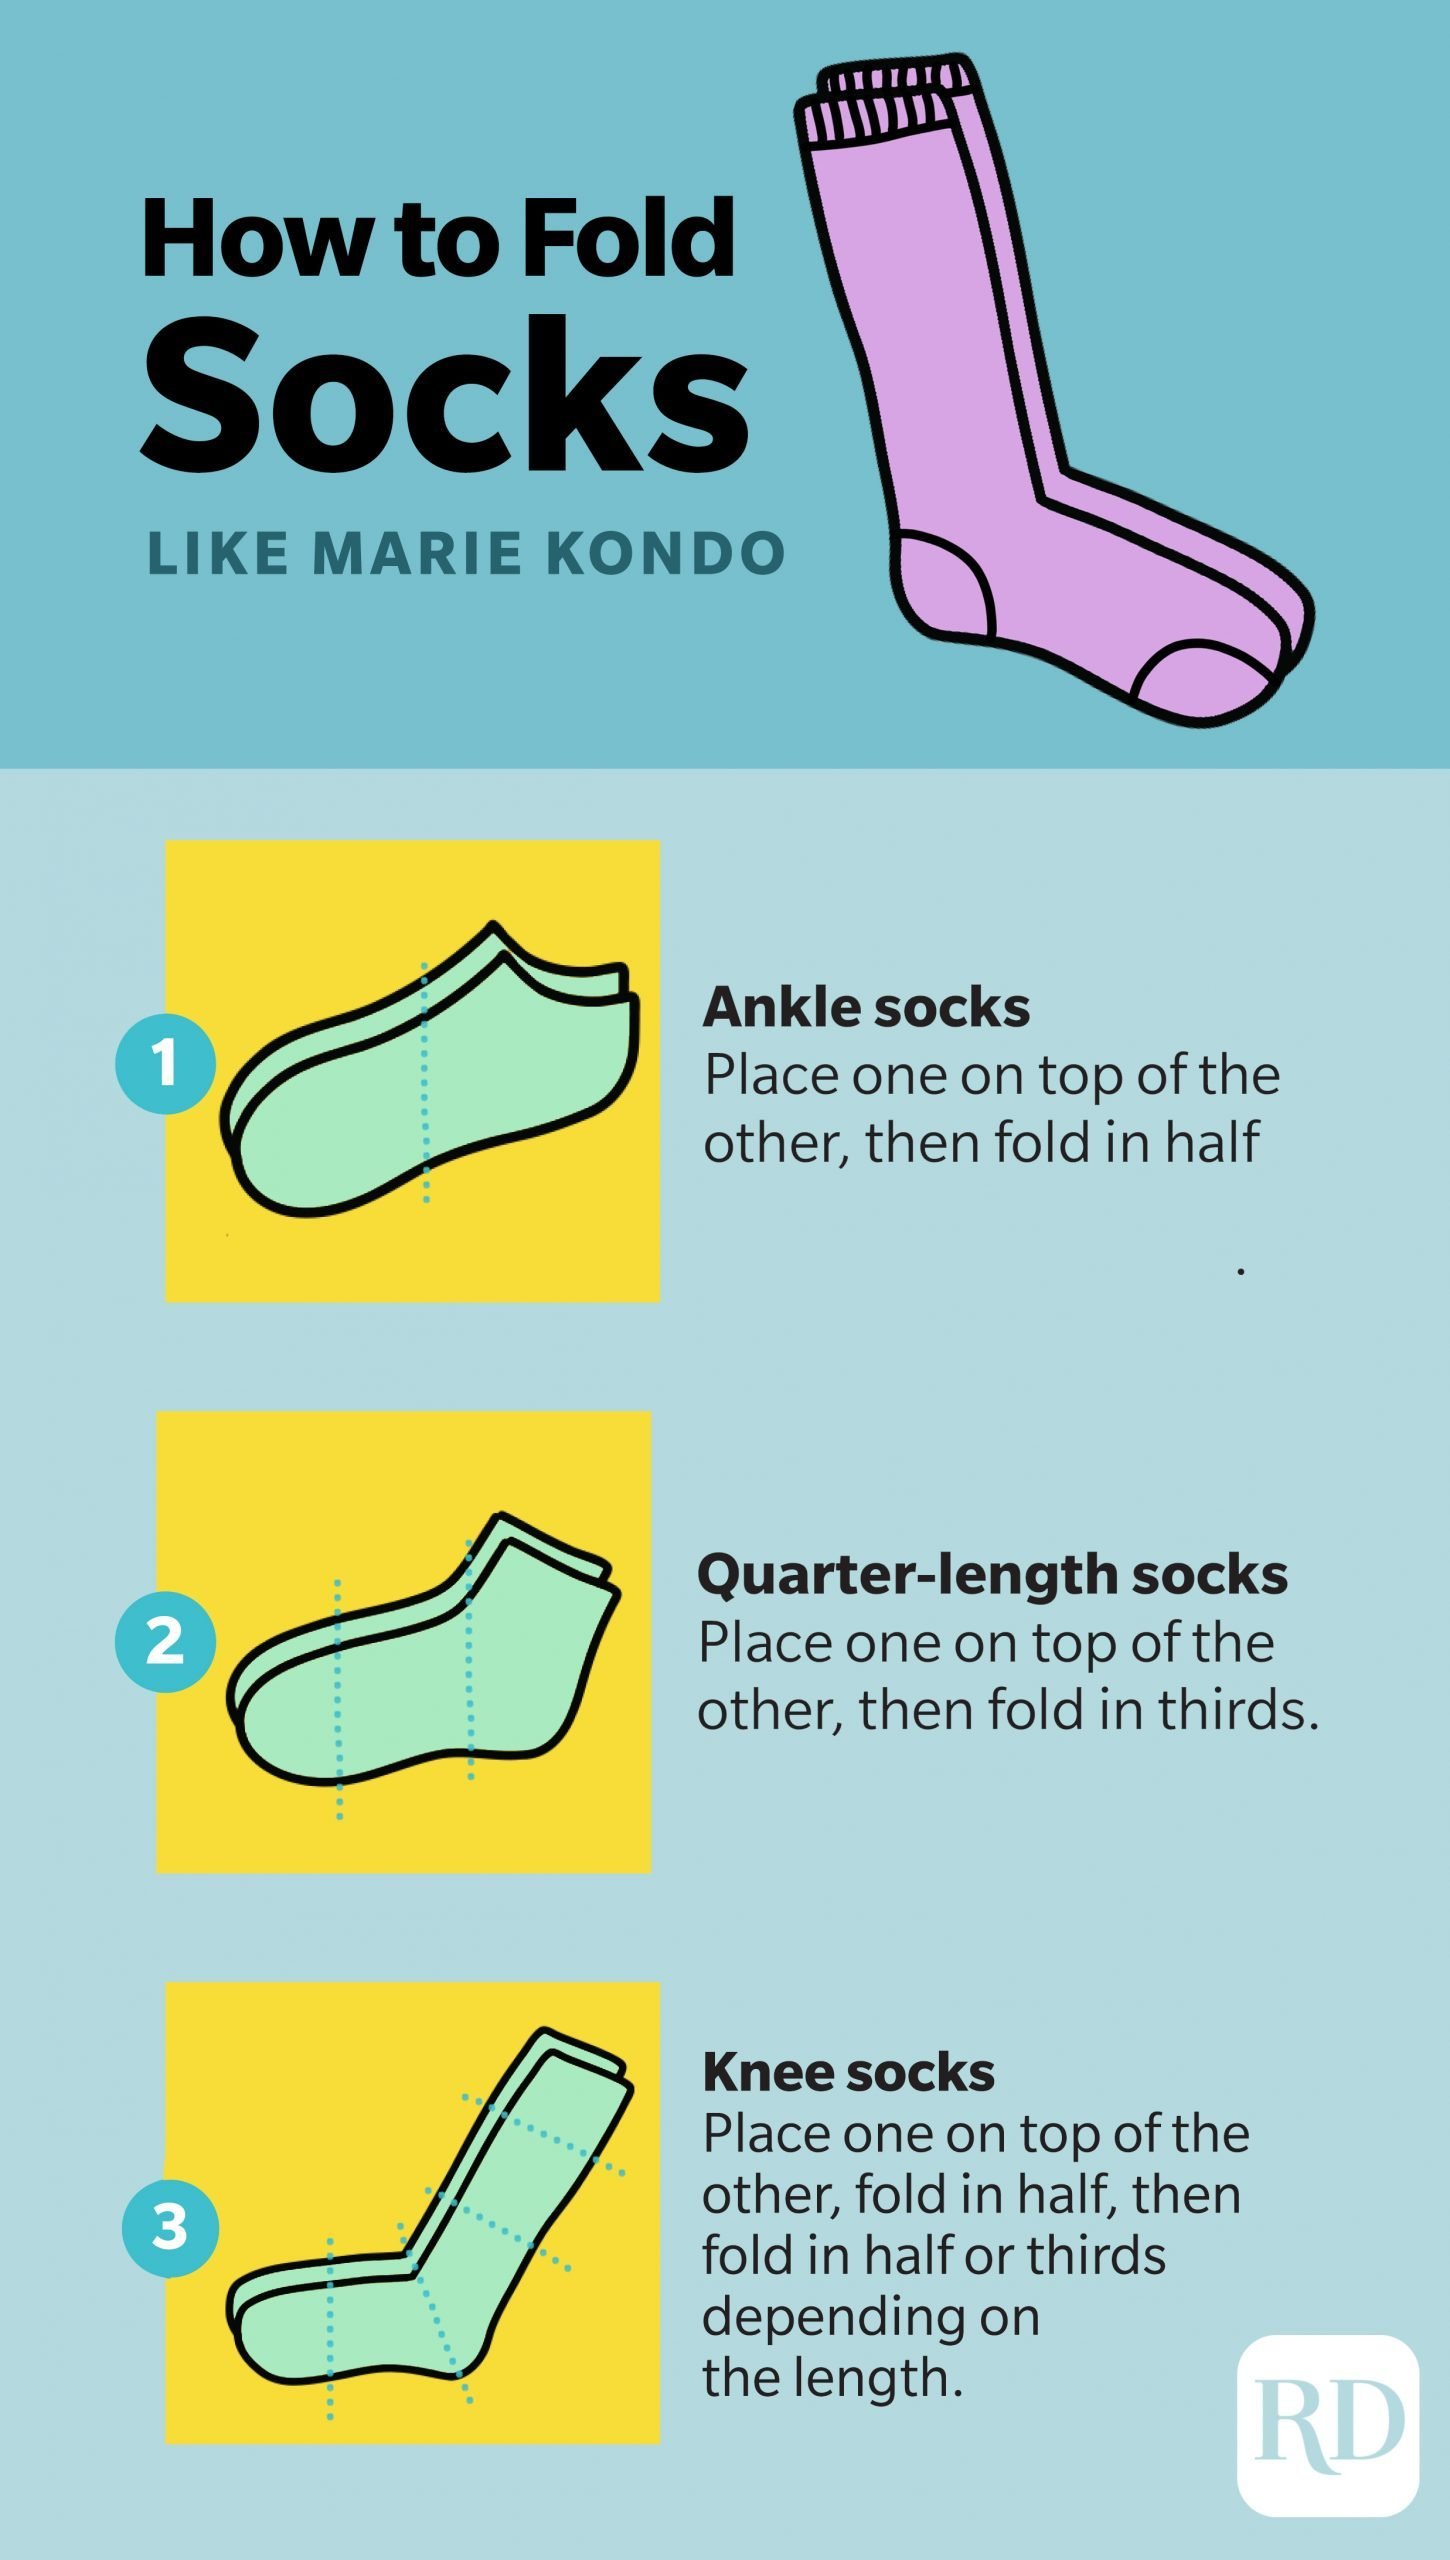 How to fold socks like Marie Kondo infographic